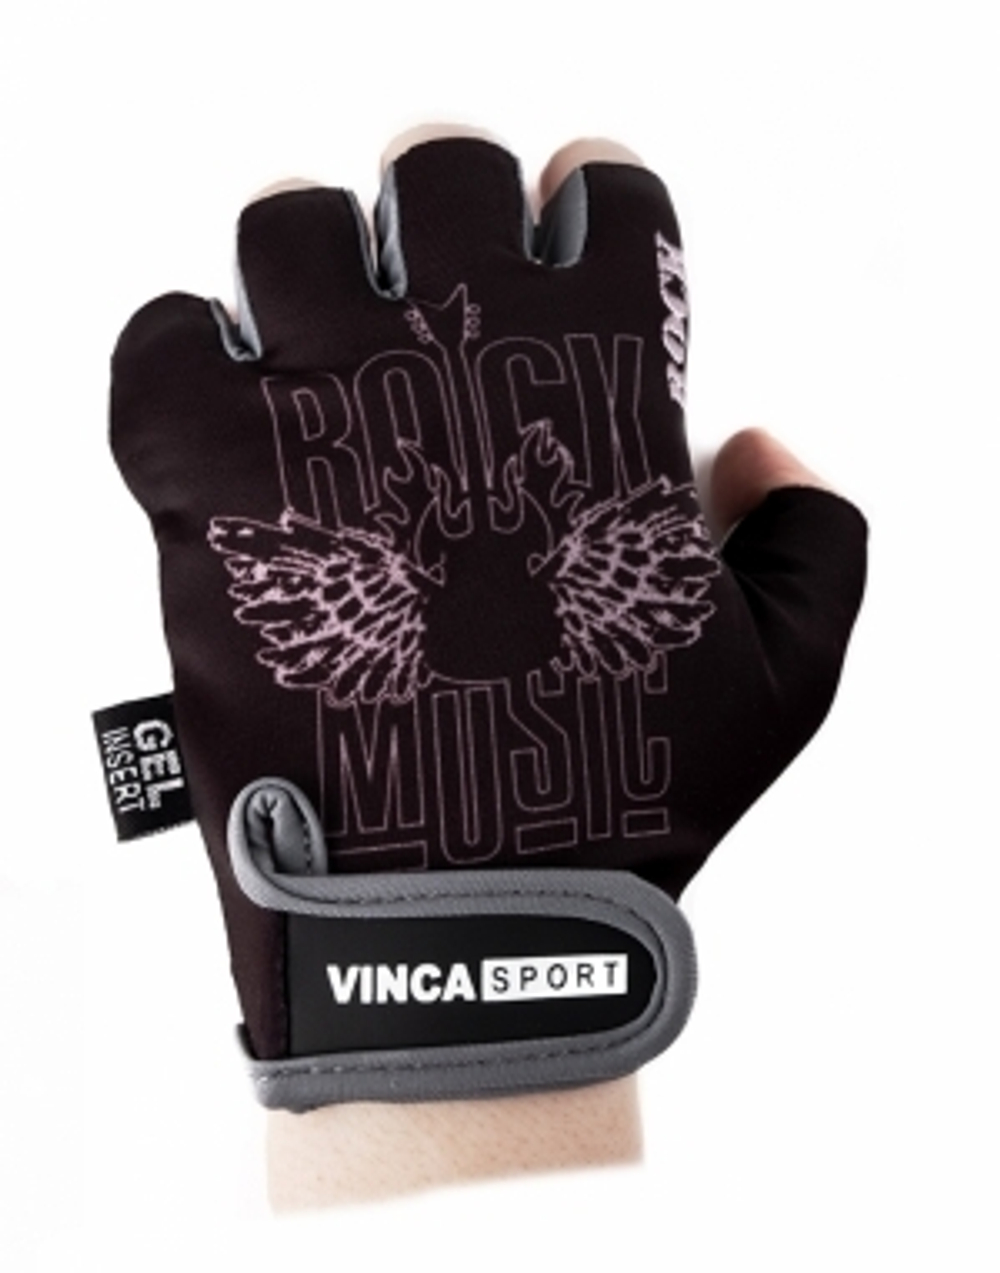 Перчатки велосипедные, ROCK, черные с серым, размер L VG 870 Rock (L)